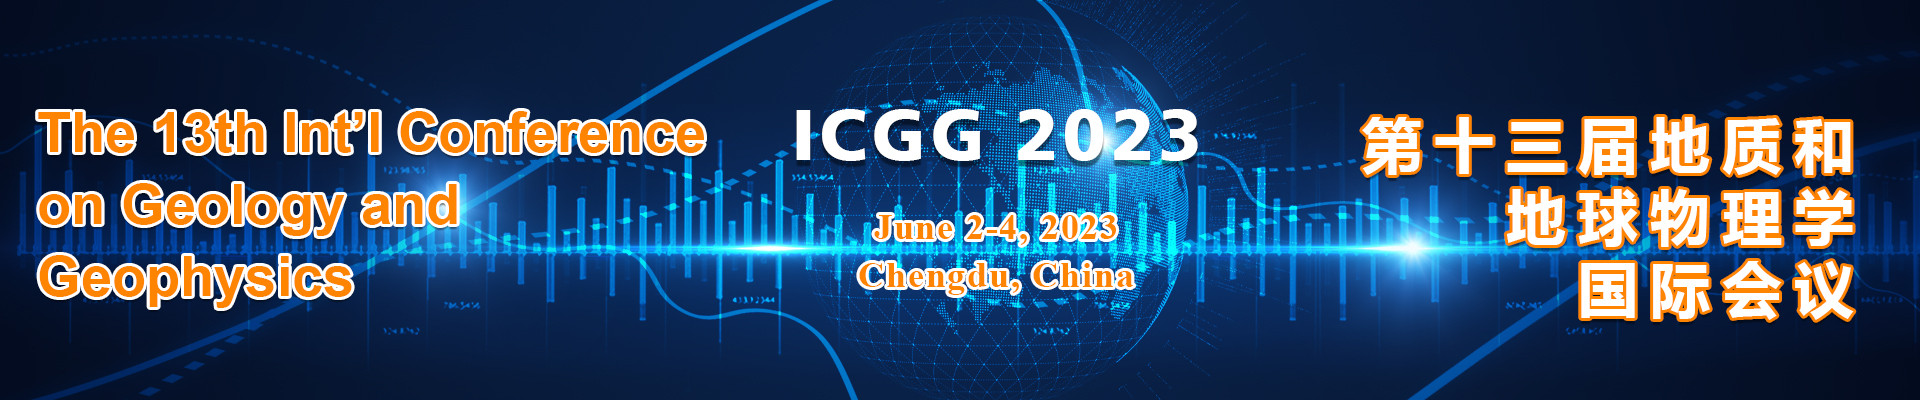 第十三届地质和地球物理学国际会议(ICGG 2023)